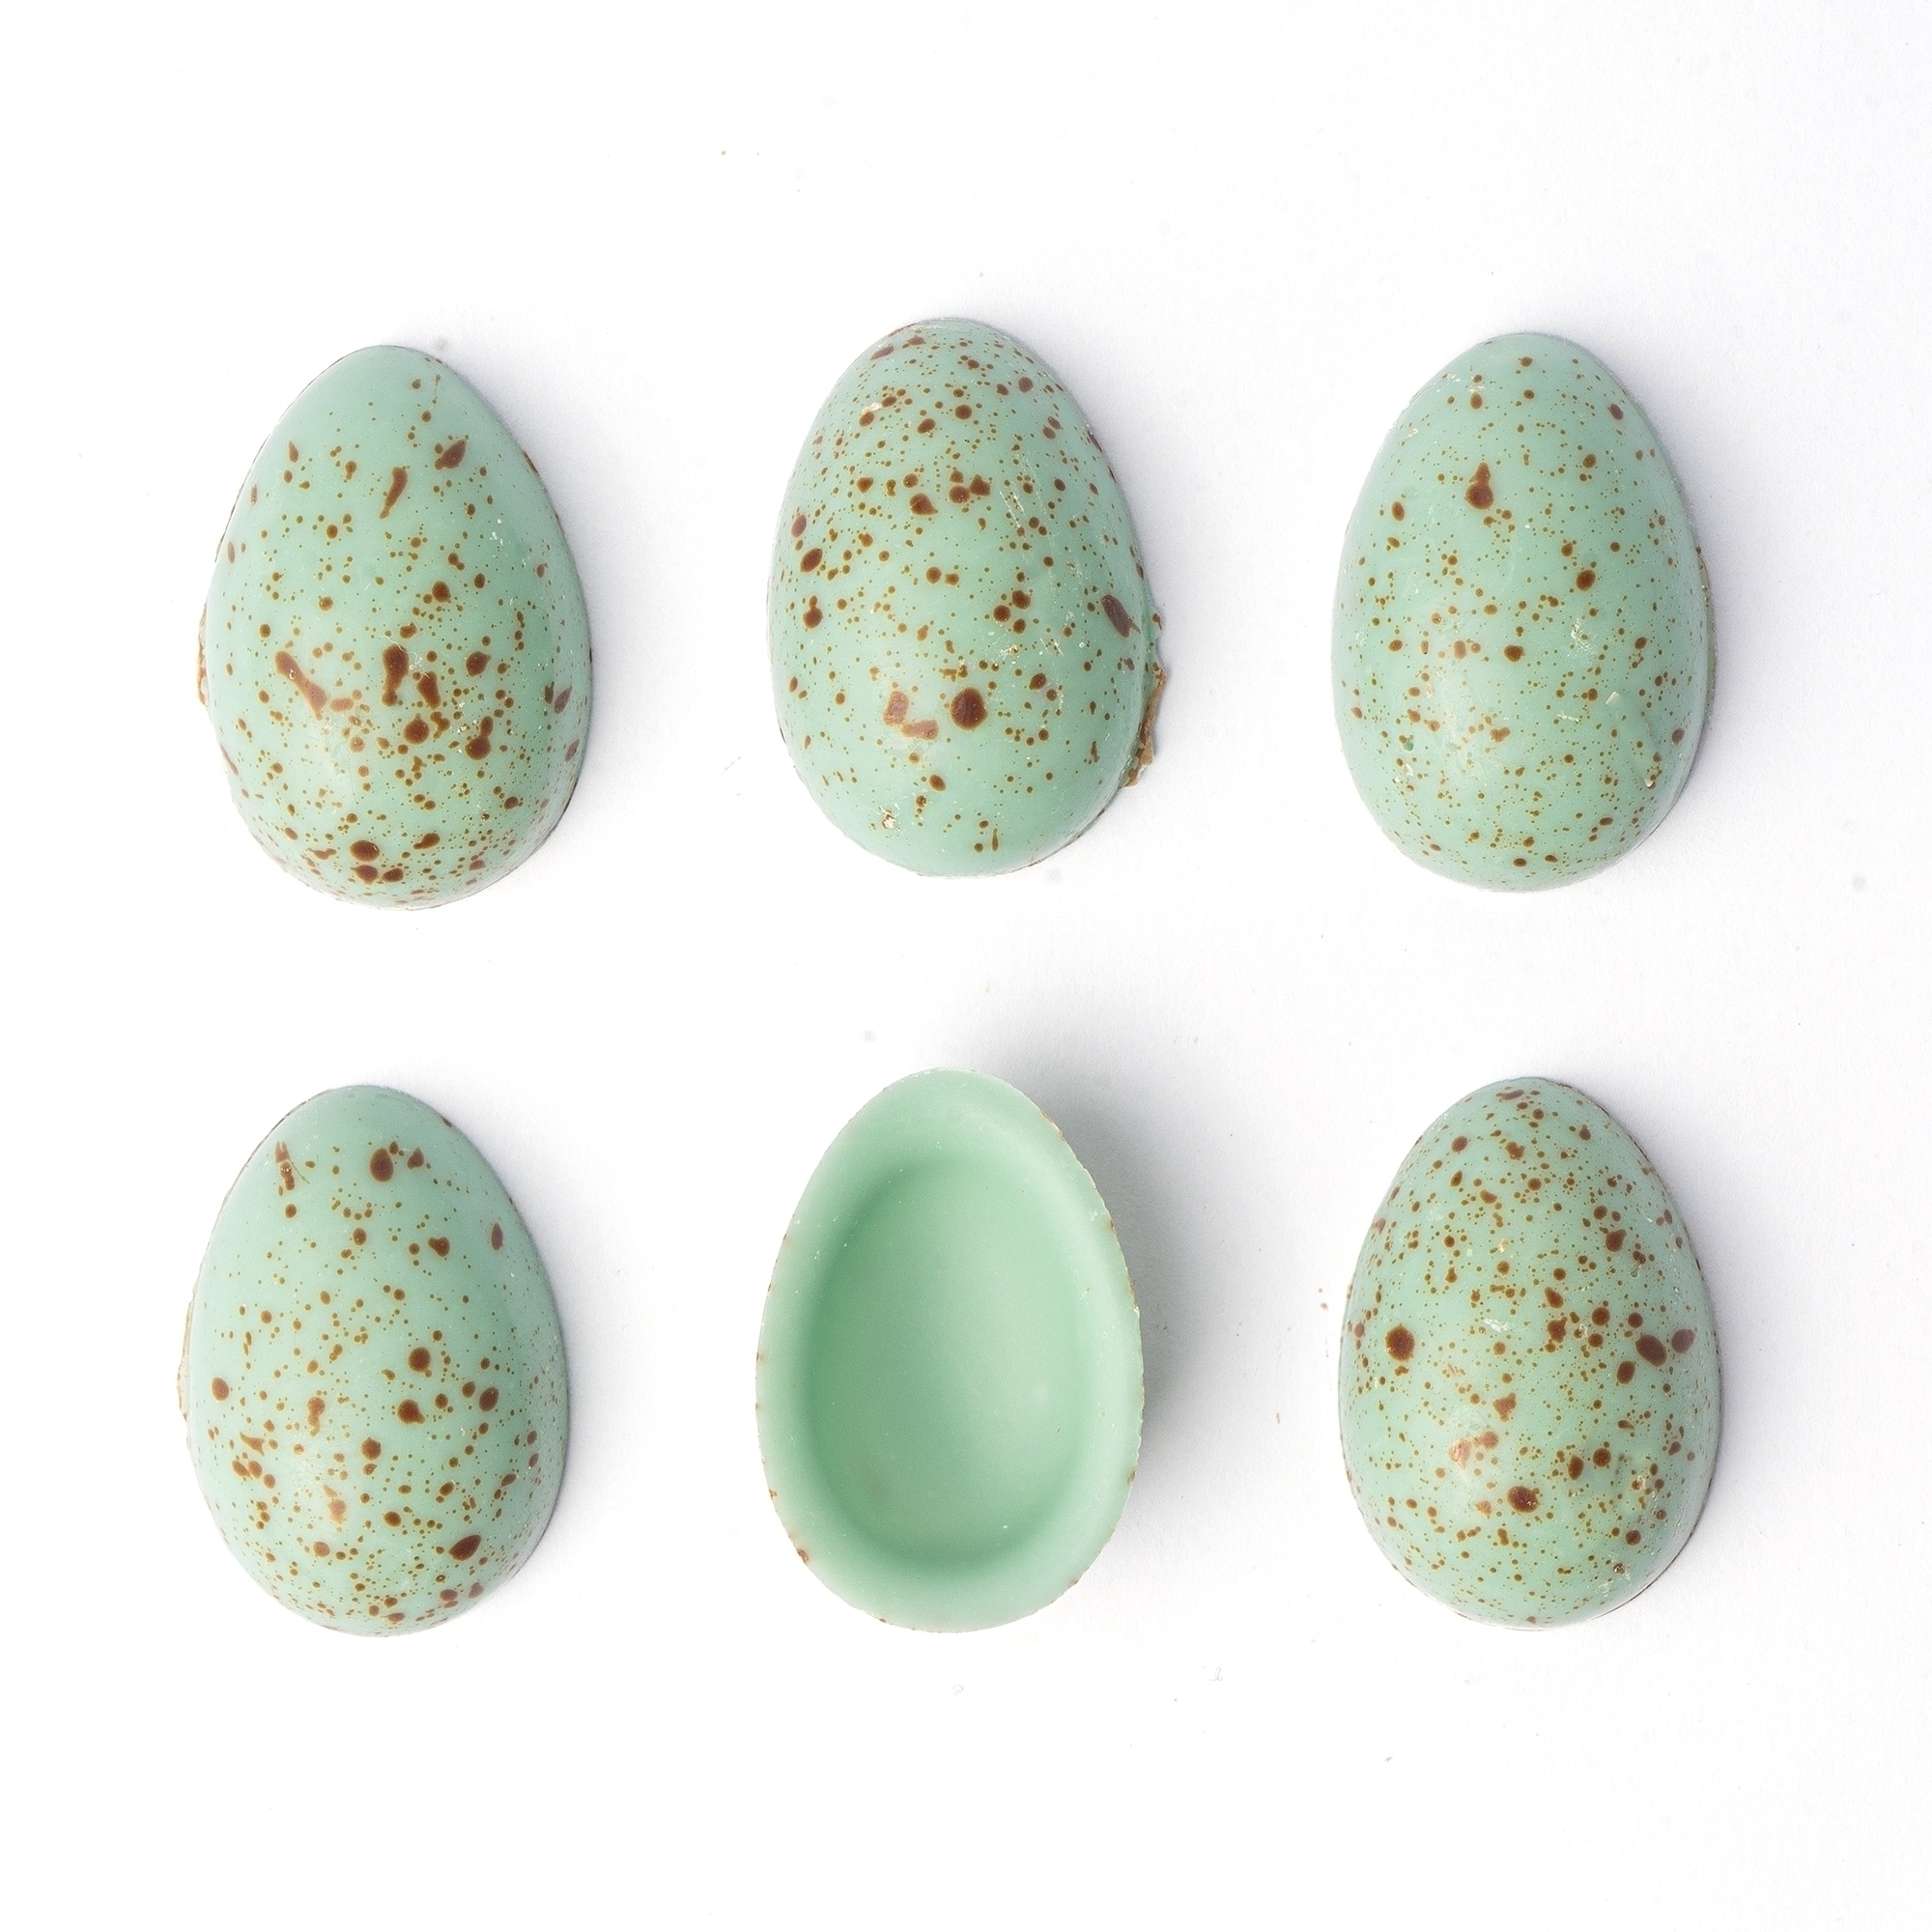 Яйца шоколадные «Колибри»  нежно-зелёные 3,3х2,2 см, Dobla, Бельгия, 3 шт. (6 половинок)  | Фото — Магазин Andy Chef  1